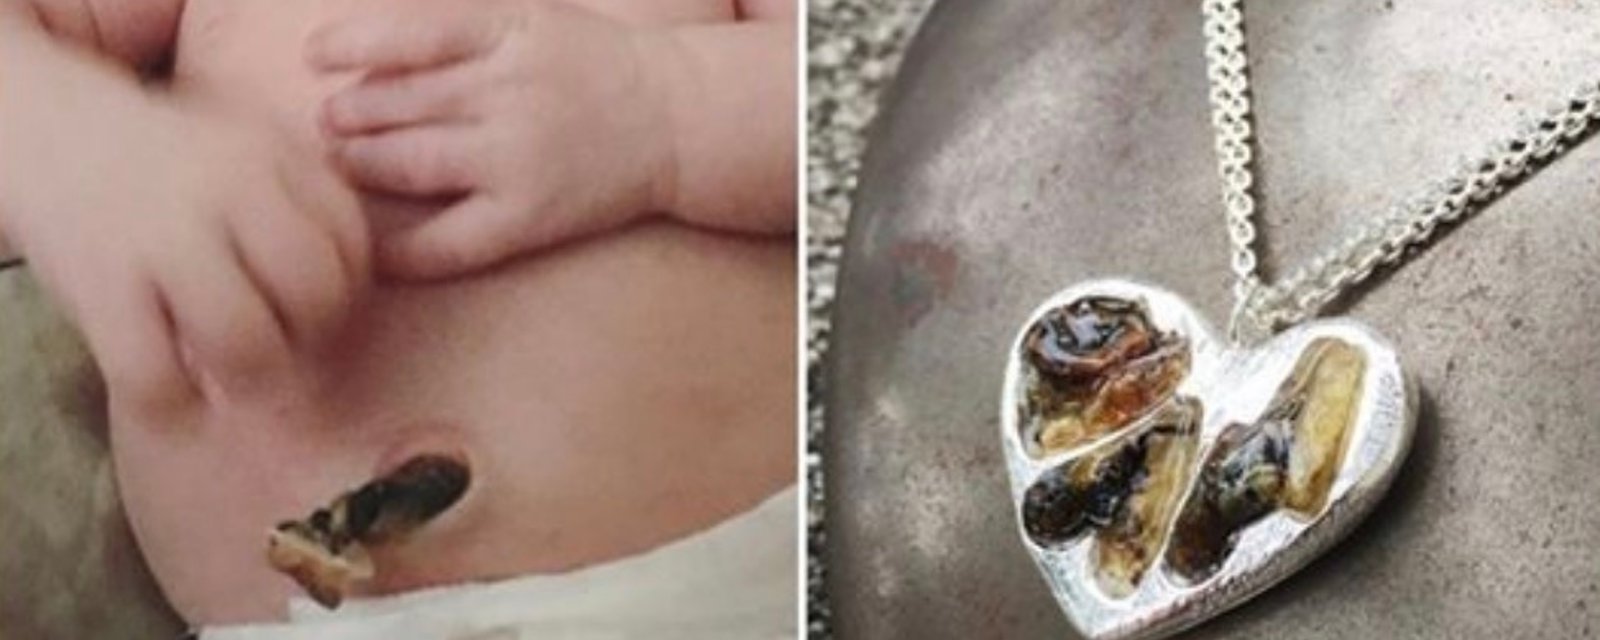 Des parents conservent le cordon ombilical de leur bébé pour en faire des bijoux